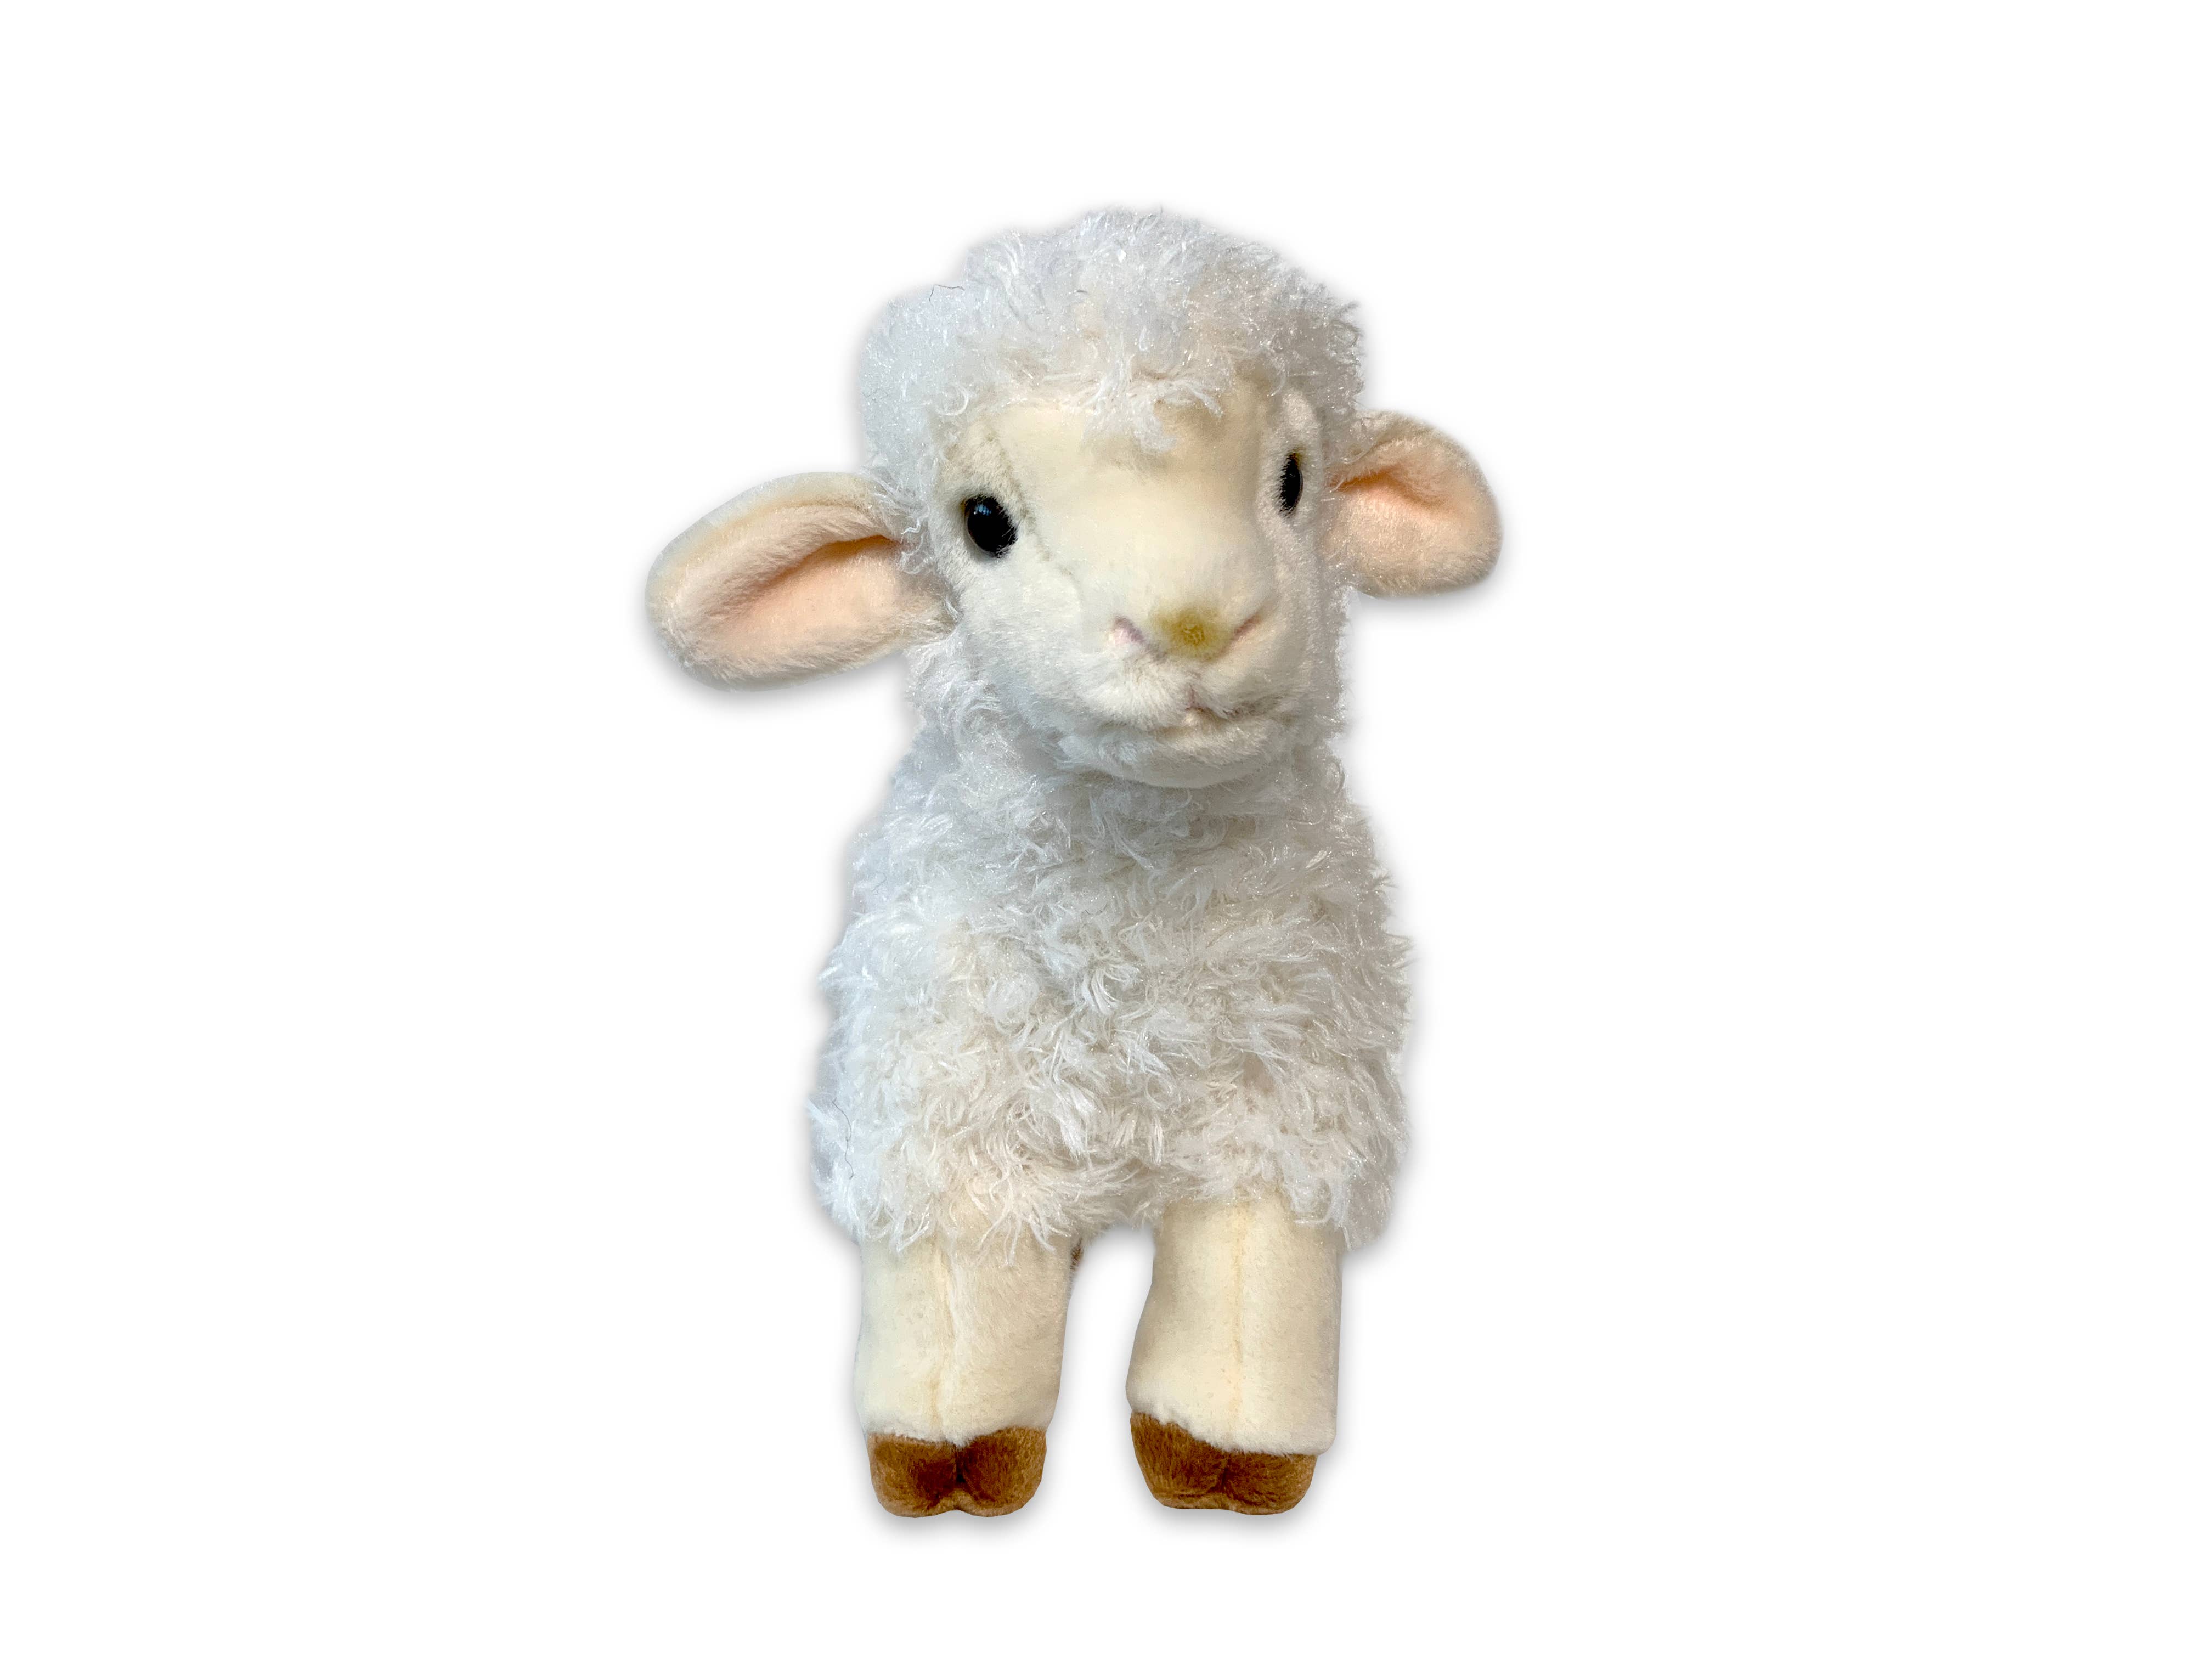 "Rupert" the Woolly Lamb